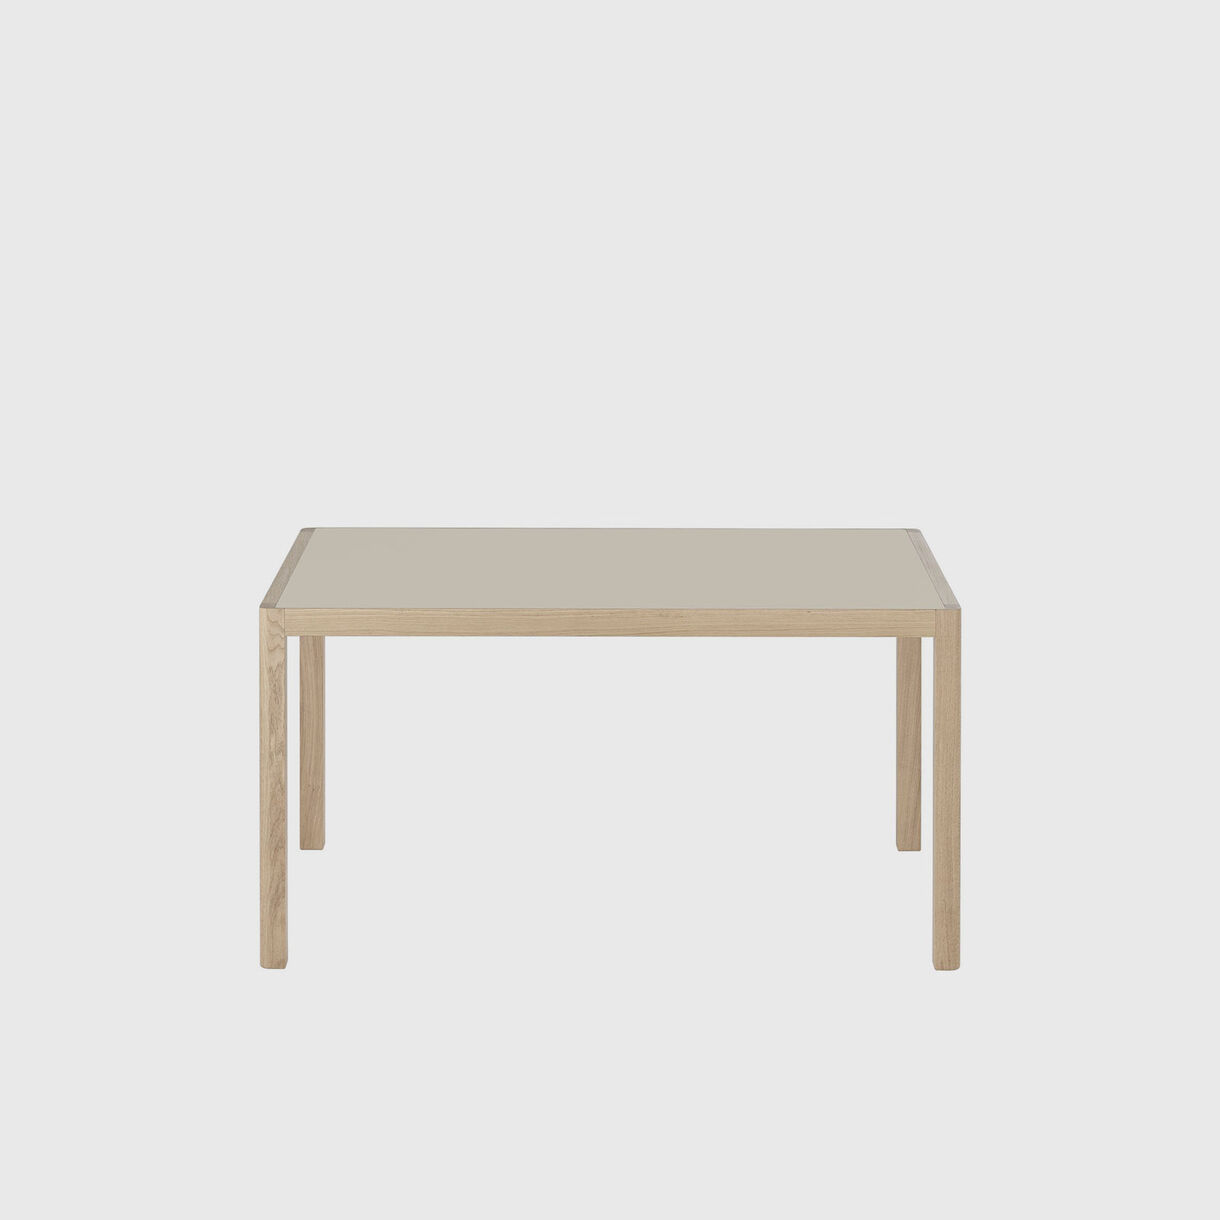 Workshop Dining Table, 1400 x 920, Warm Grey & Oak